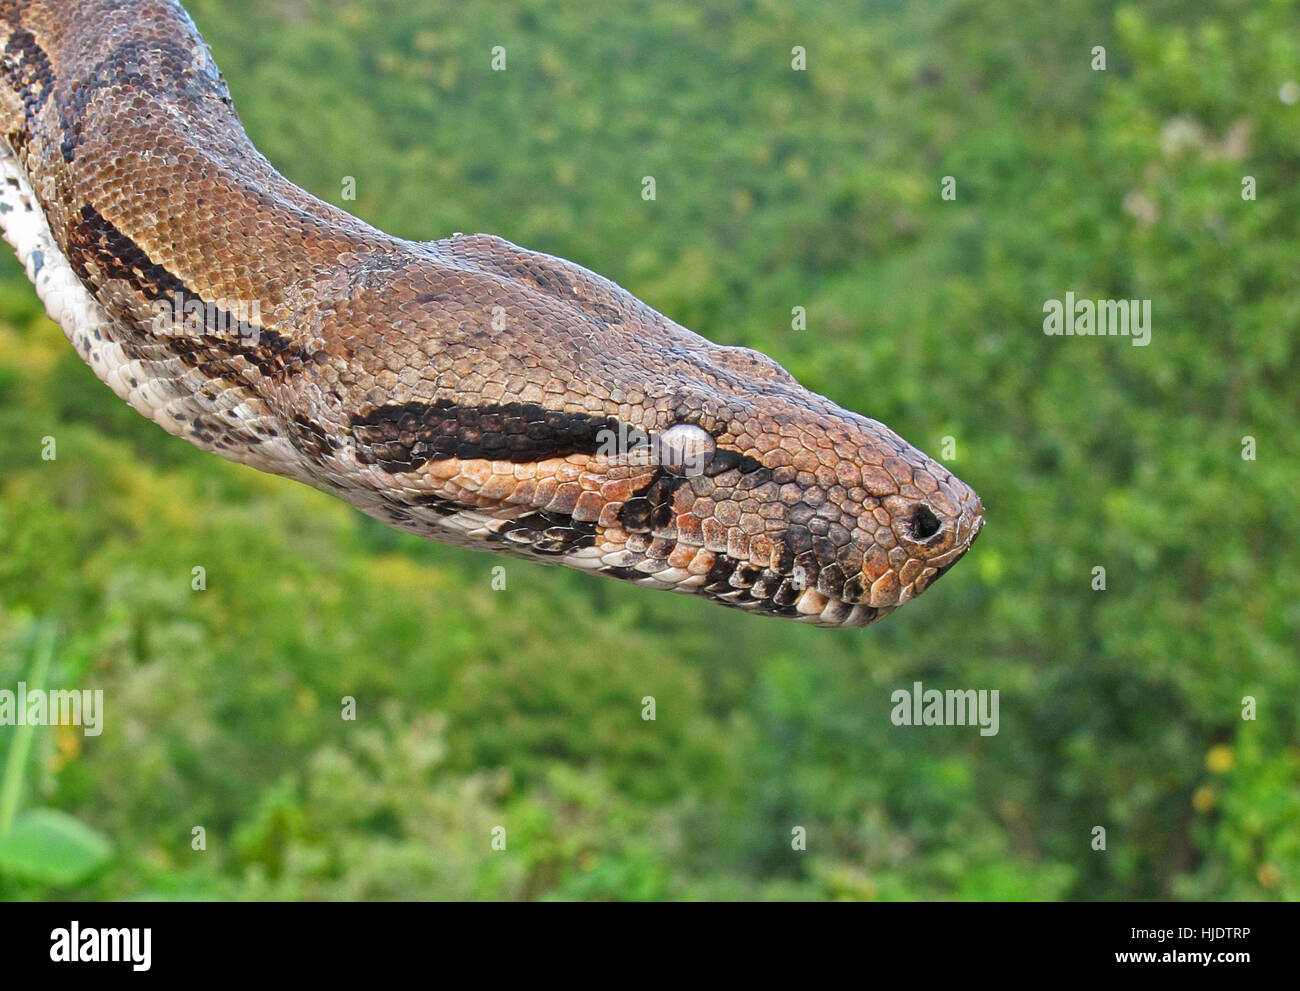 Boa Constrictor (Boa constrictor orphias) close up de tête, St Lucia, Petites Antilles Décembre Banque D'Images